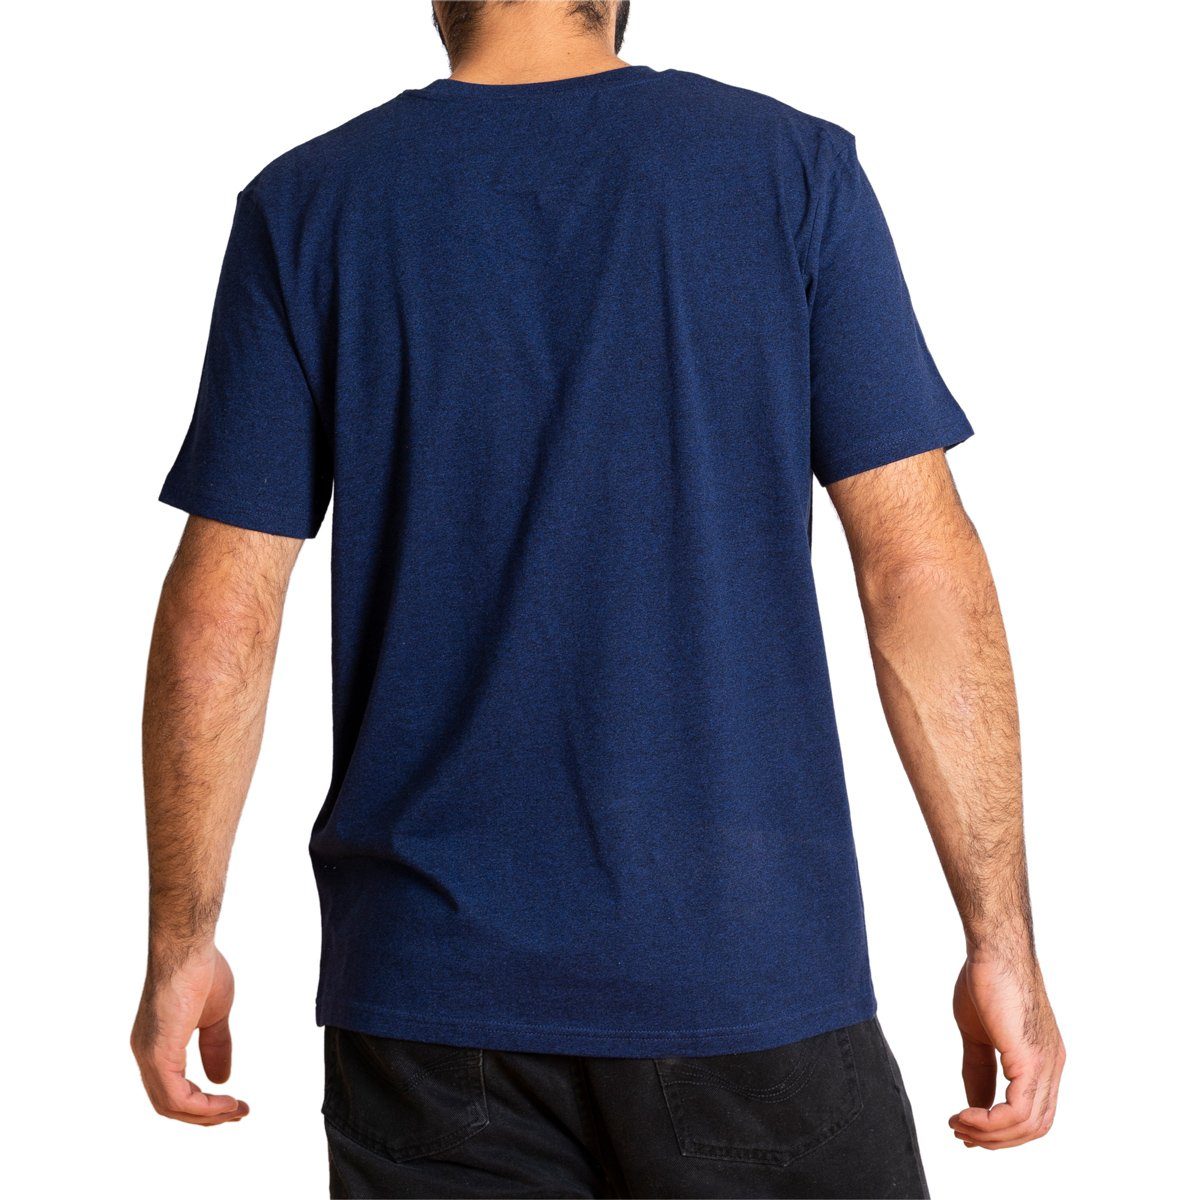 PANASIAM T-Shirt Herren T-Shirt "Basic" dunkelblau fair aus Baumwolle gehandelter Bio